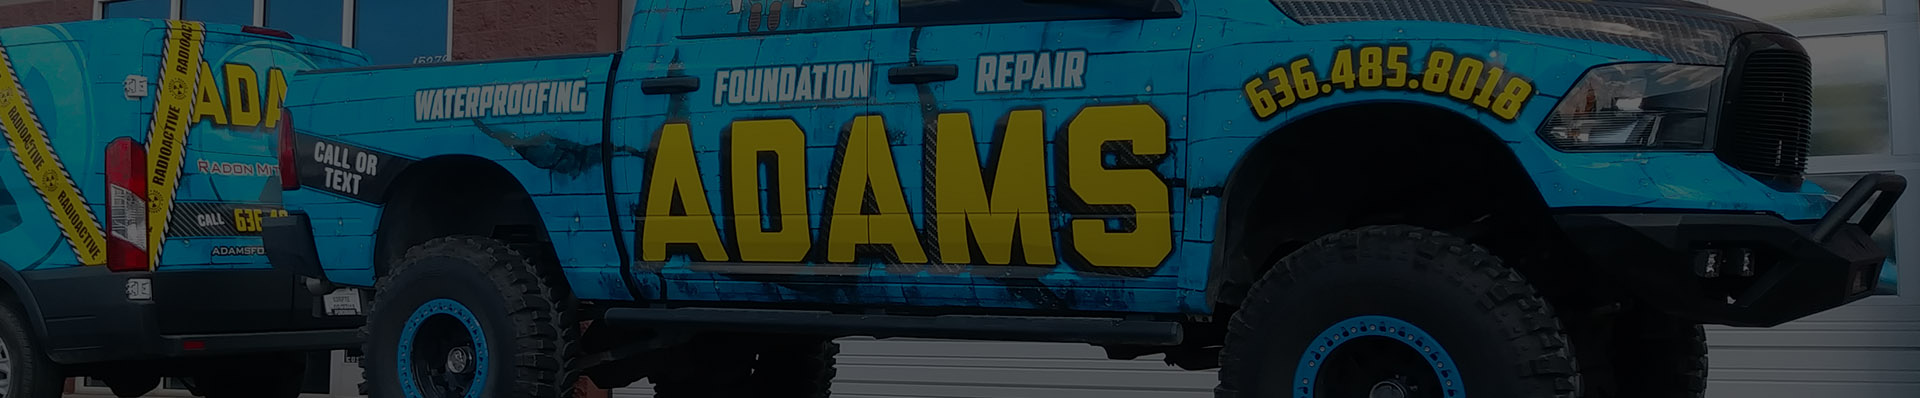 Adams Foundation Repair